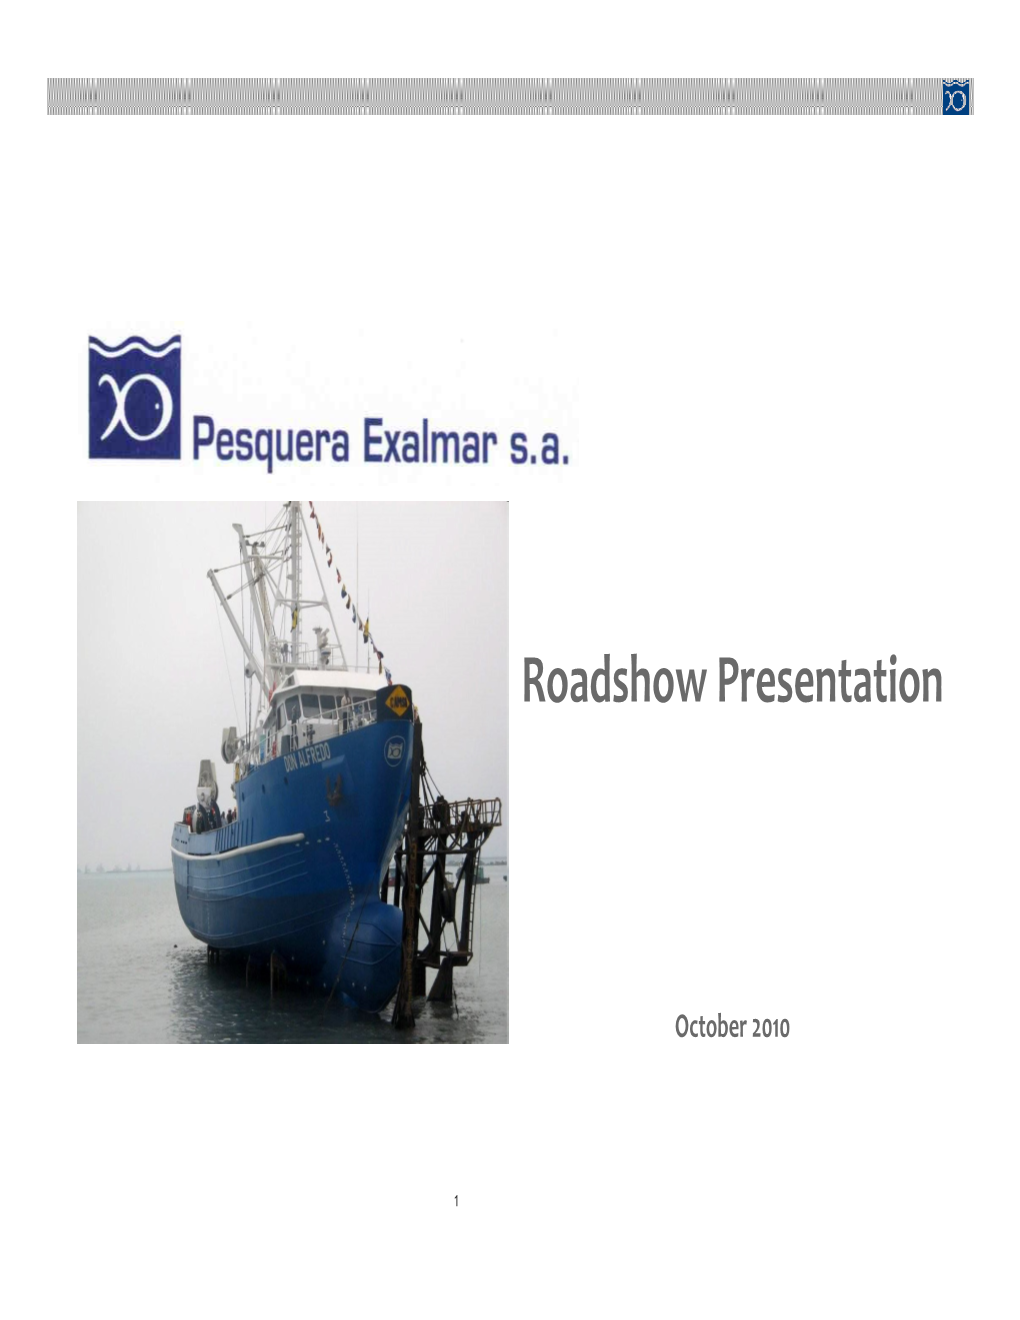 Roadshow Presentation Roadshow Presentation